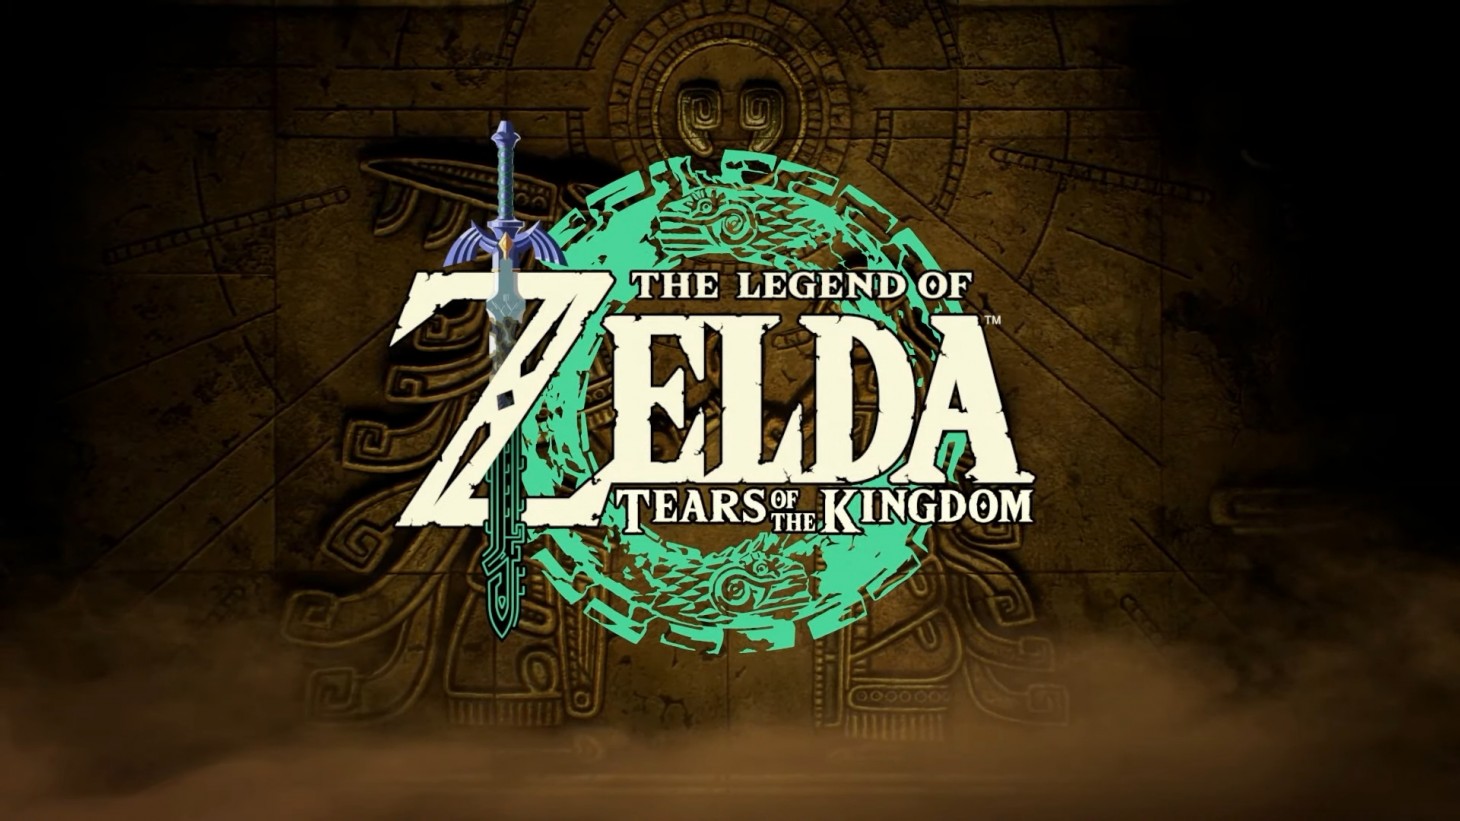 Emulação] Emular The Legend of Zelda Tears of the Kingdom Melhor e